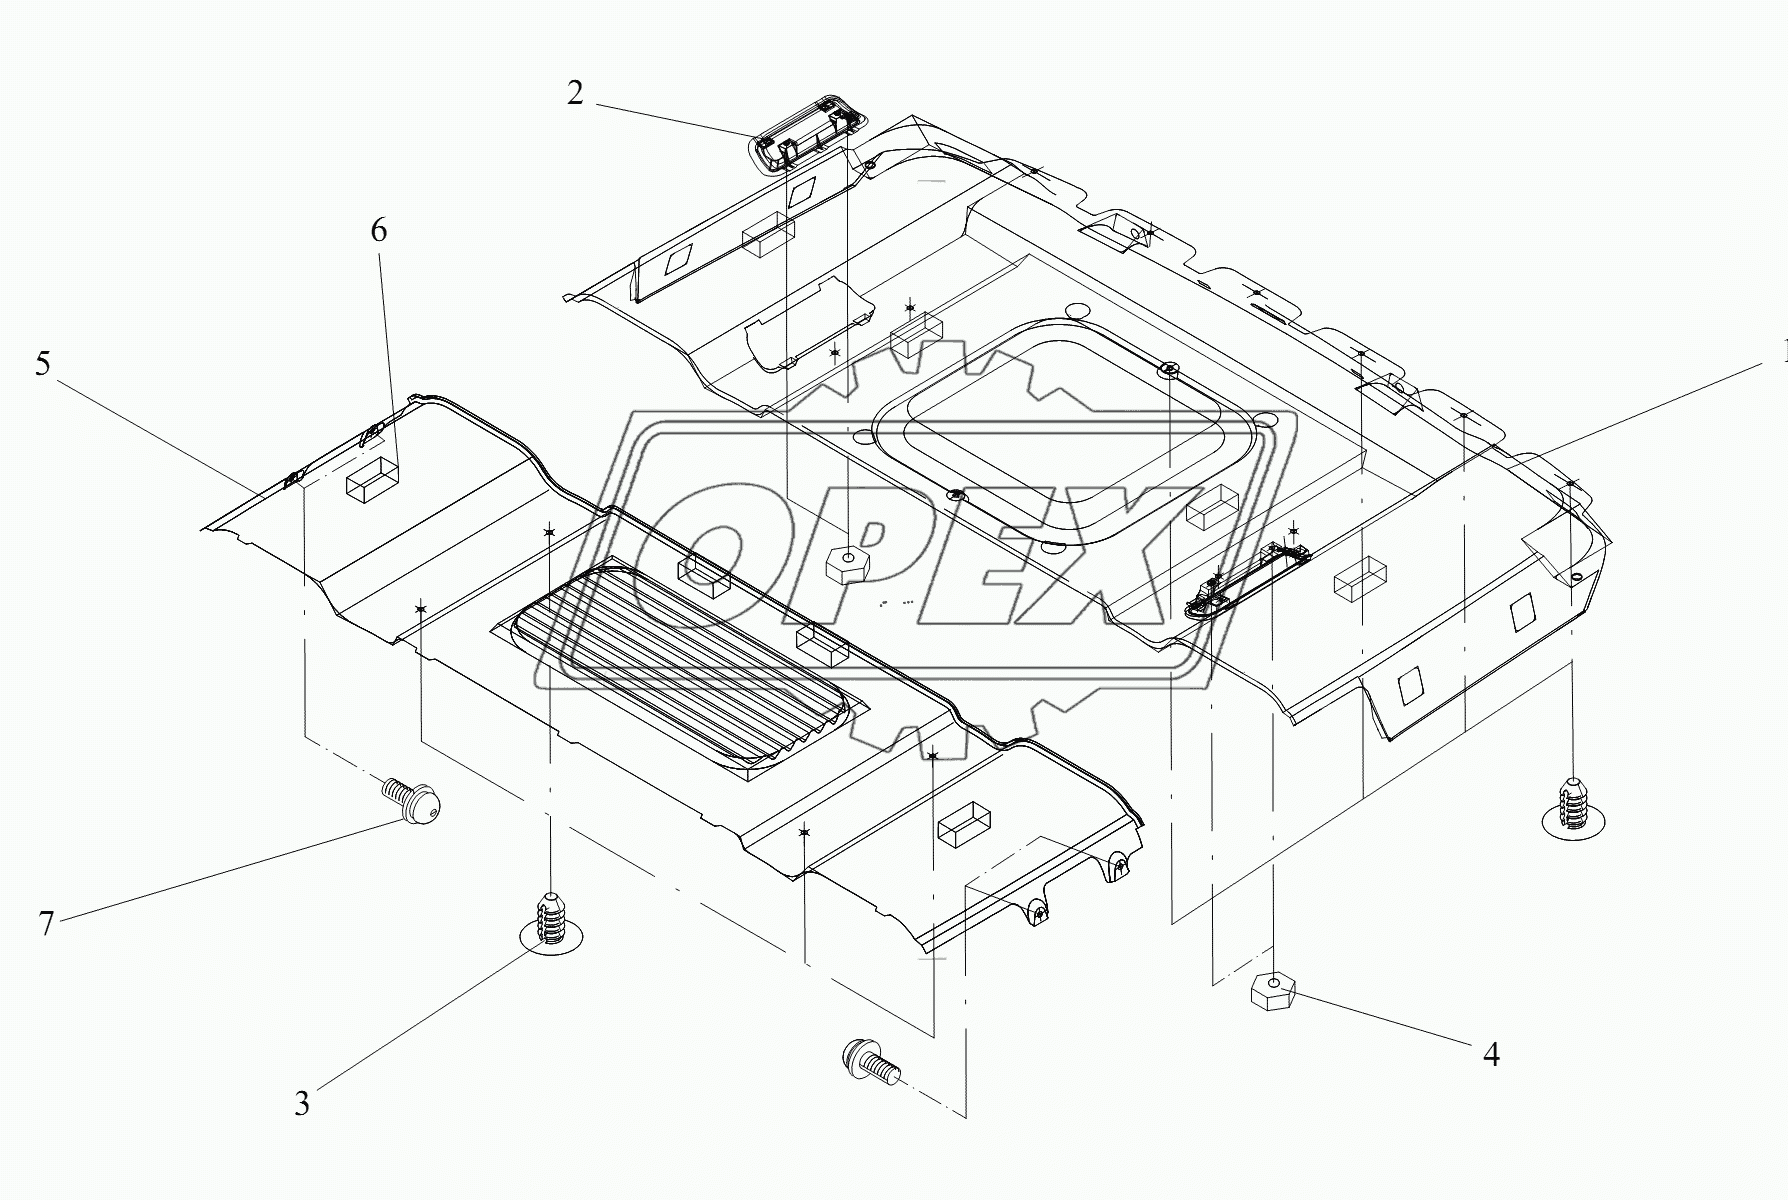 Составляющие элементы обшивок крыши (I)